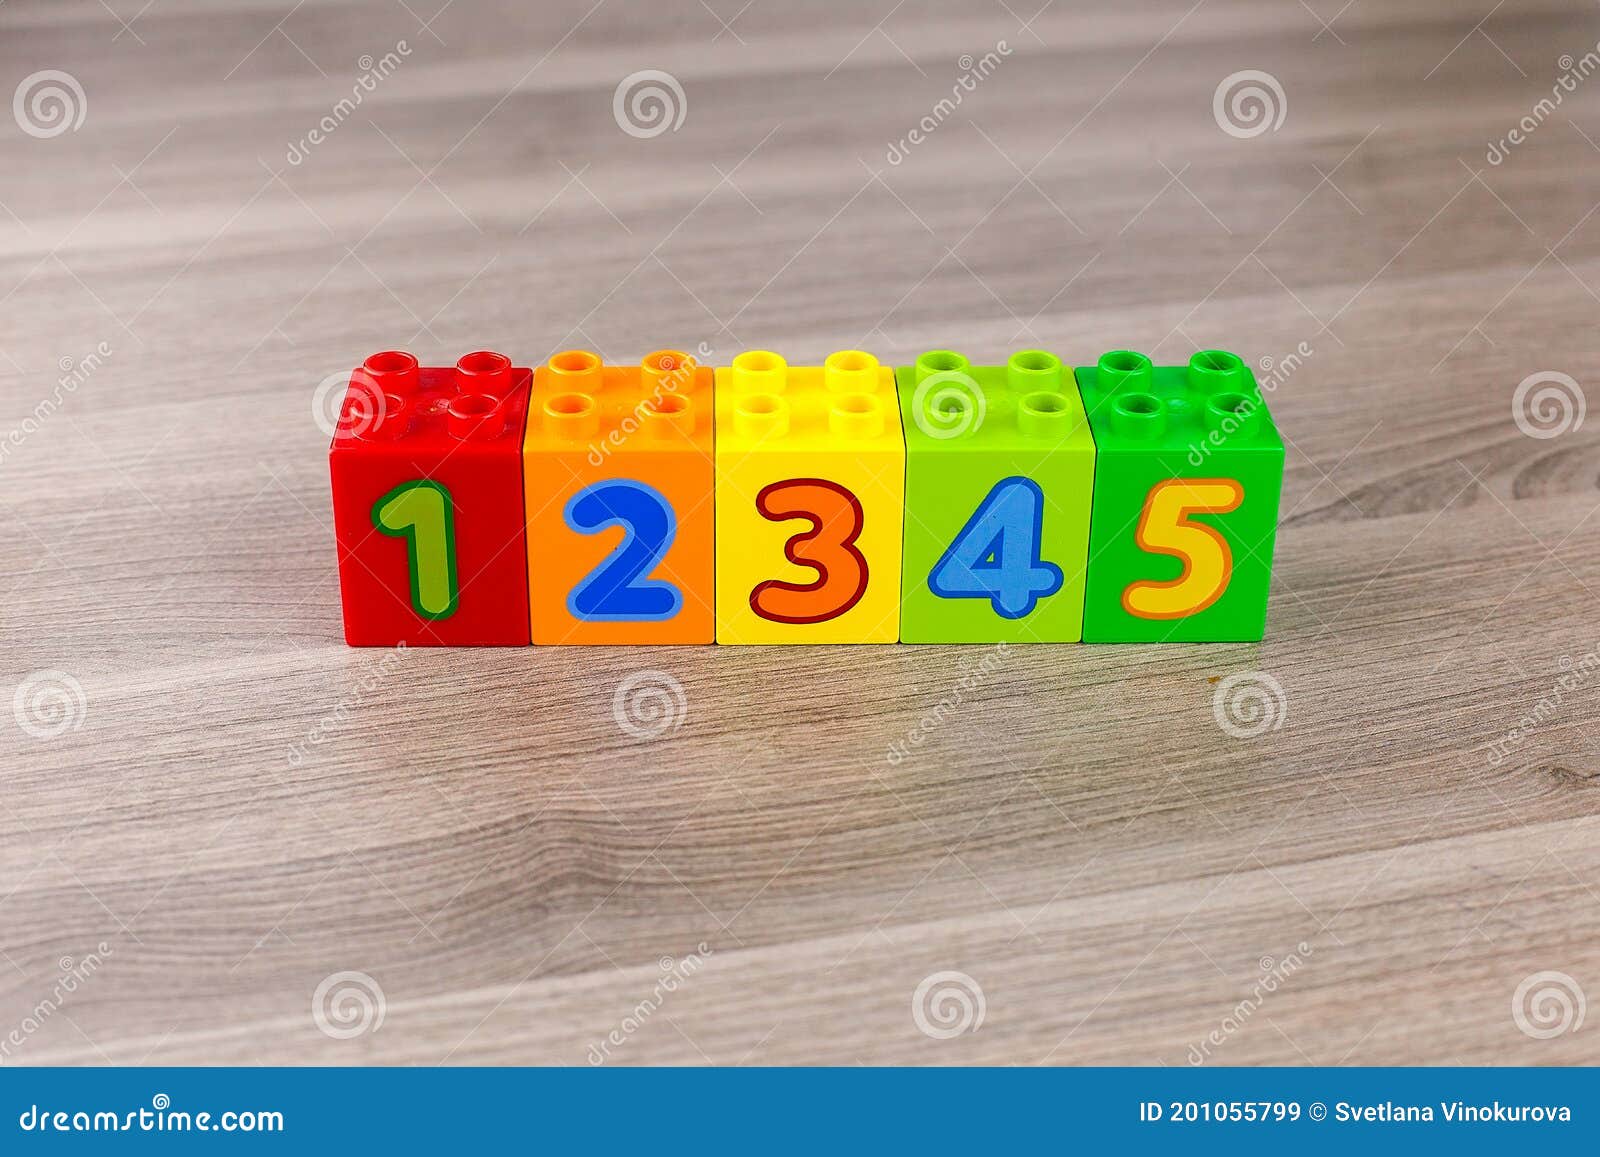 Niños Cubos De Plástico Para Aprender Aritmética Con Números Imagen de archivo - Imagen de cubos: 201055799